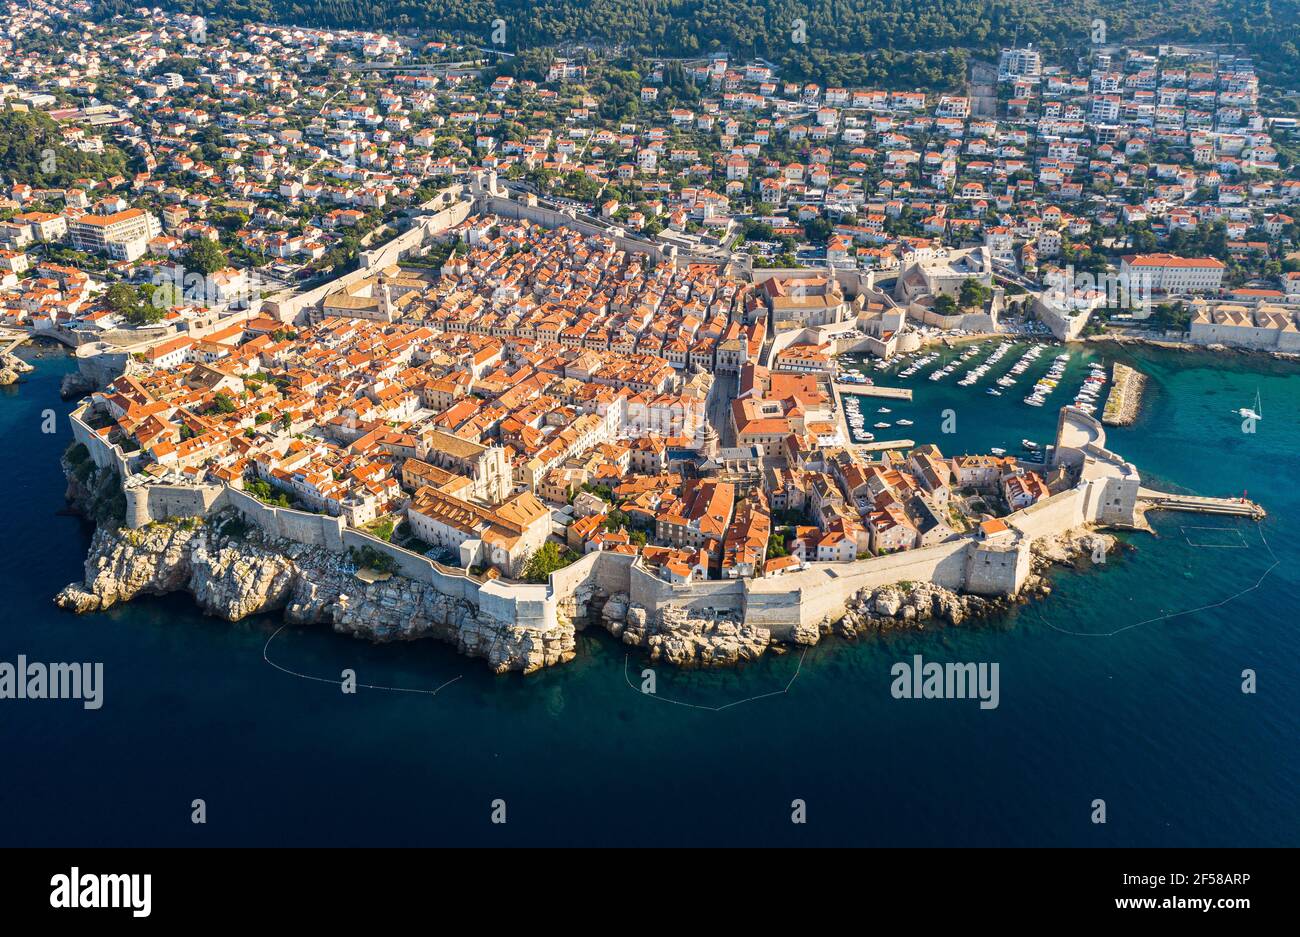 Vue imprenable sur la célèbre vieille ville médiévale de Dubrovnik Avec murs fortifiés massifs au bord de la mer Adriatique en Croatie Banque D'Images